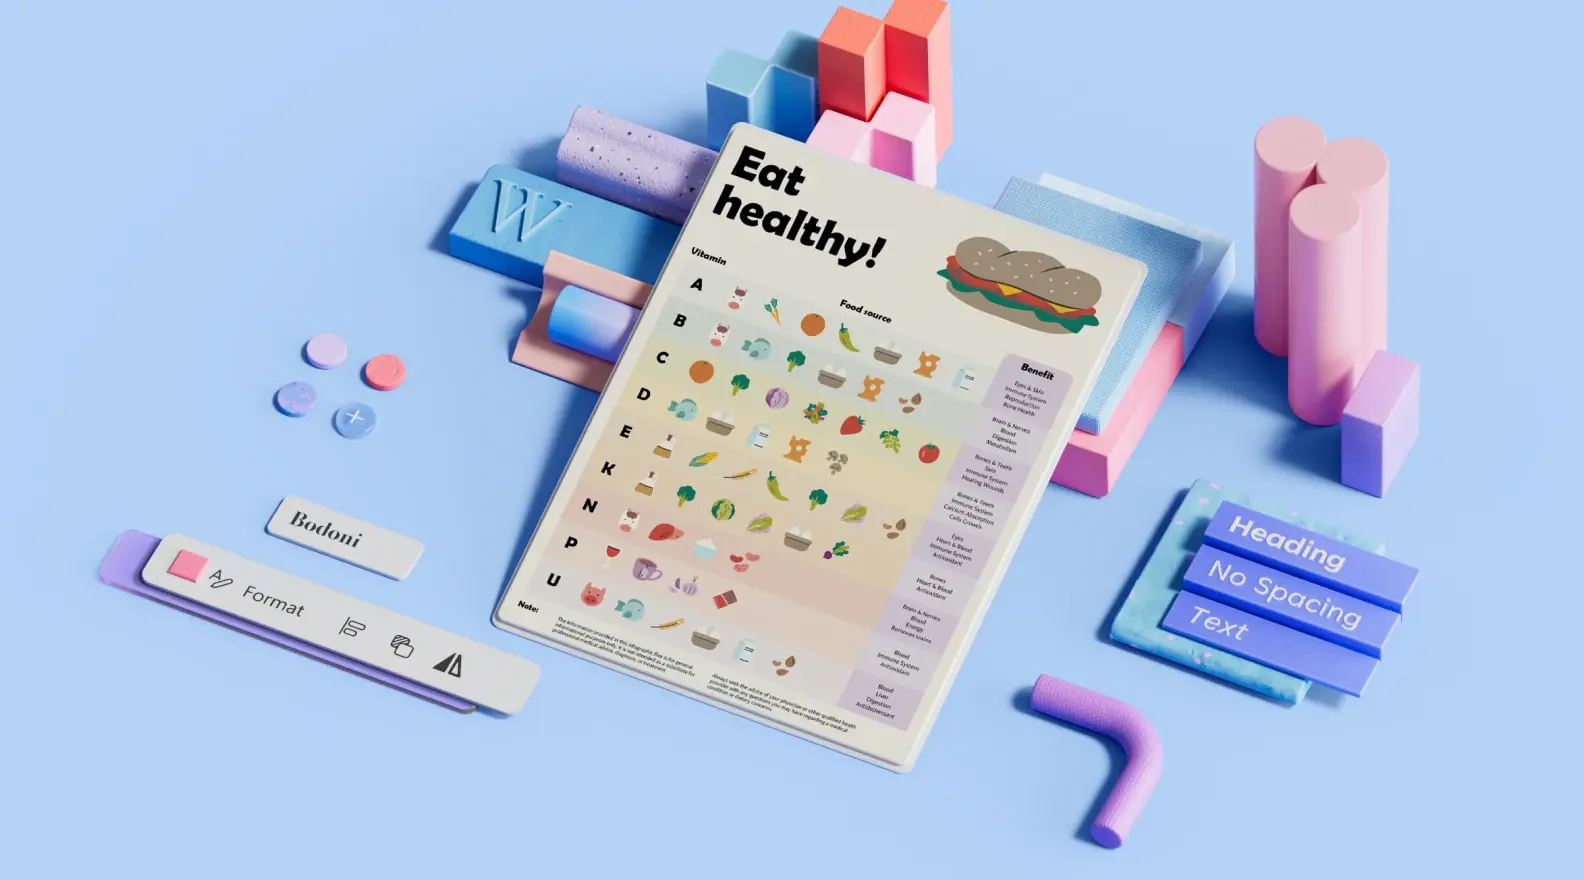 Szablon plakatu promującego zdrowe odżywianie otoczony elementami projektu 3D